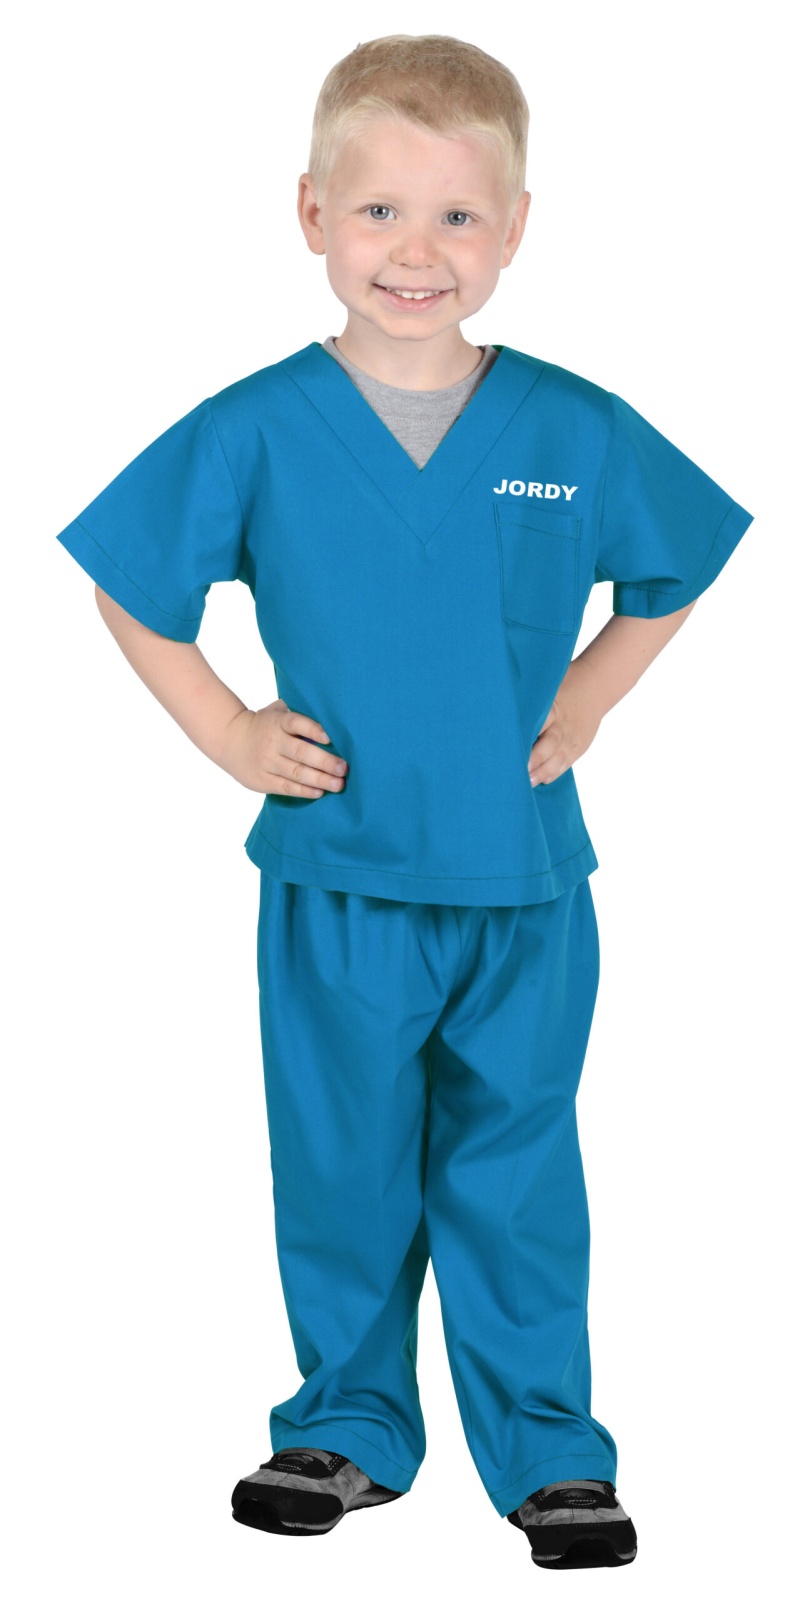 Dr. Scrubs Size 6/8 - 48-62 Lbs, Height 42-50" Astor Blue